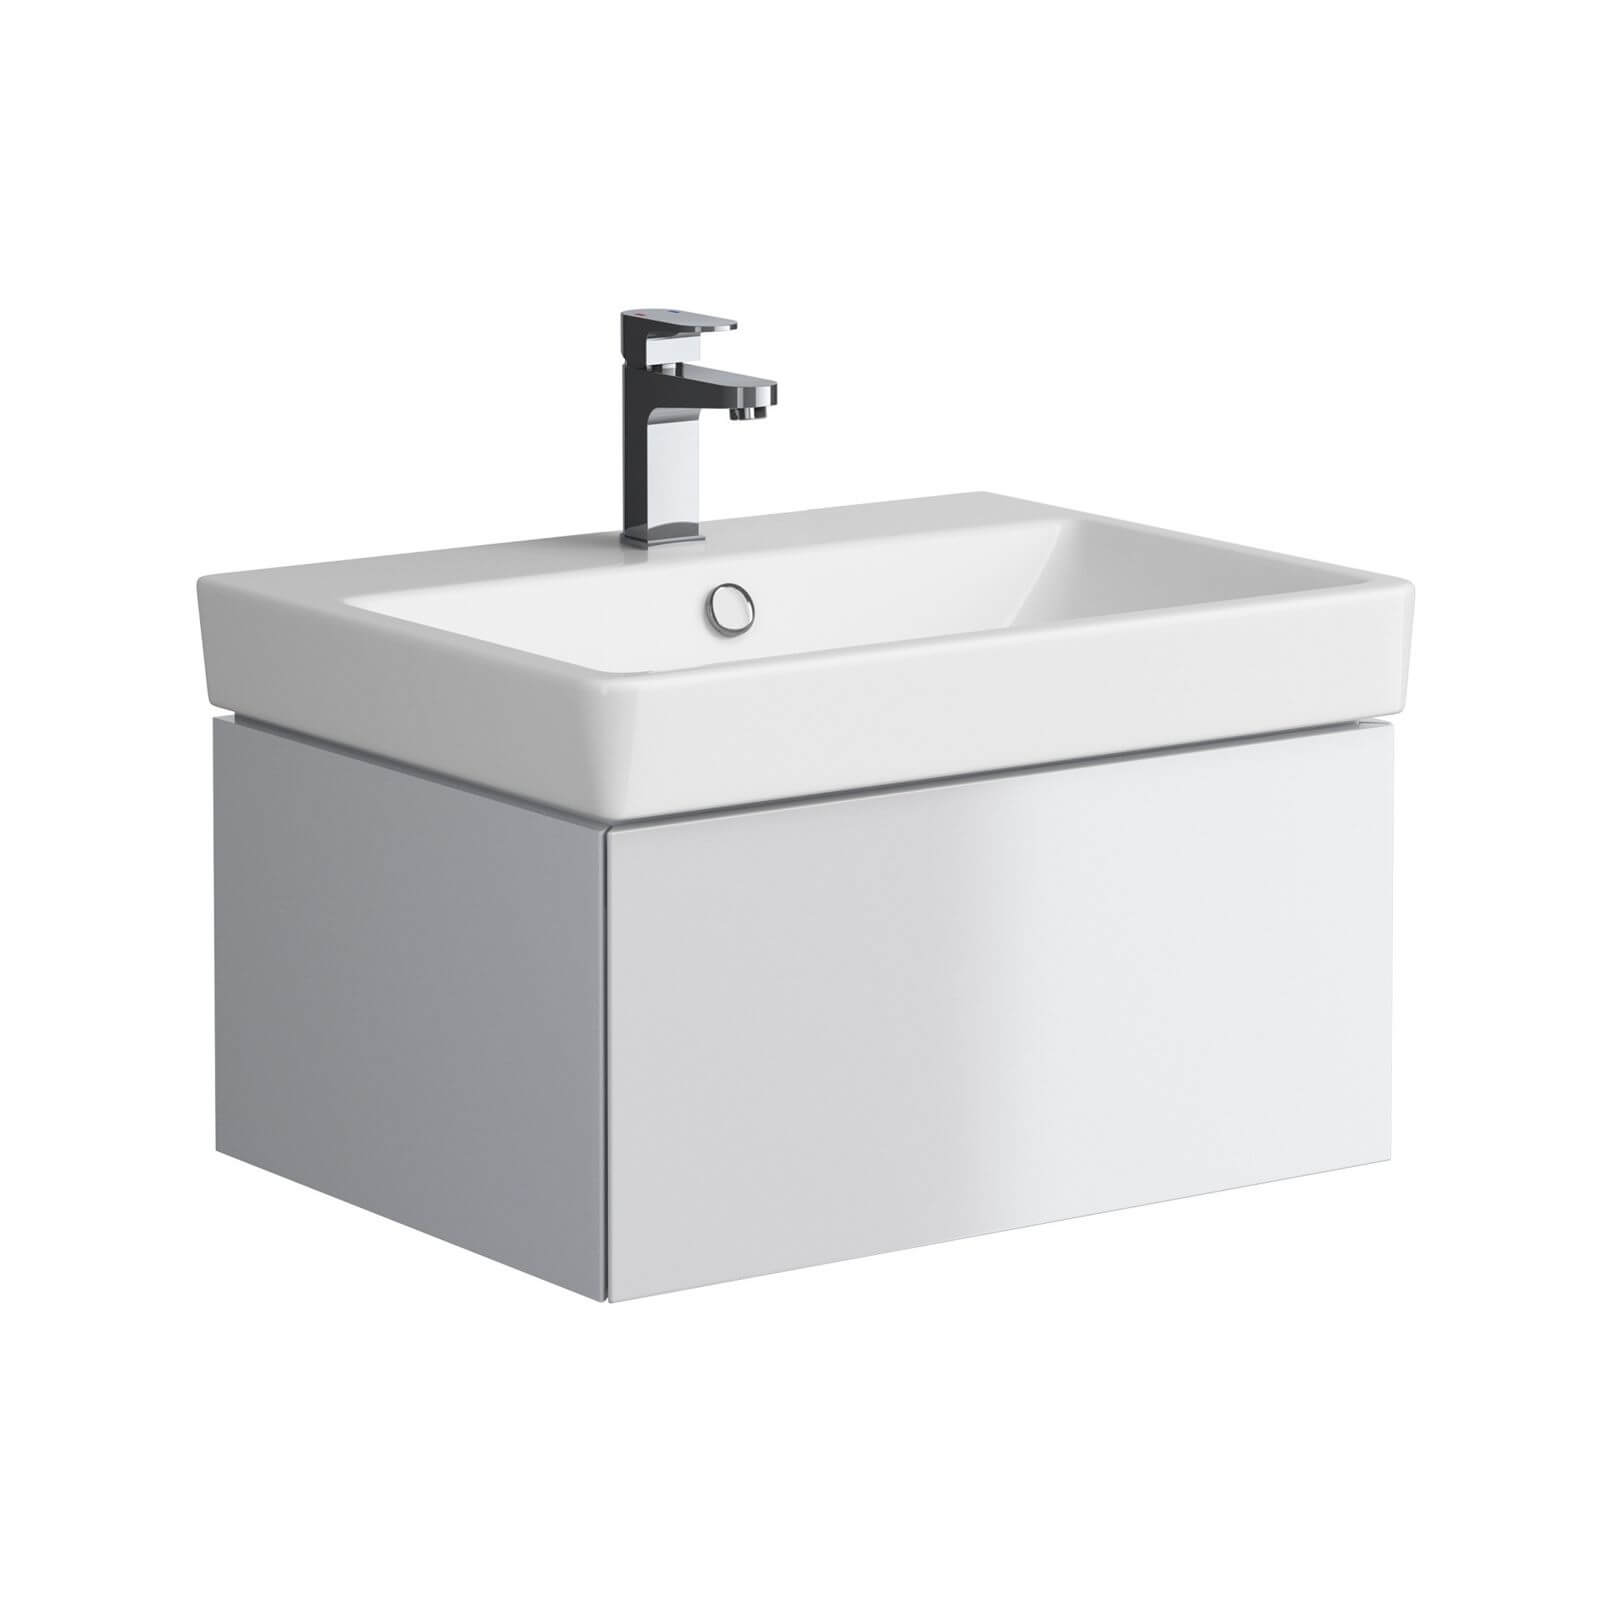 Splendour Washbasin Cabinet - 60cm - White